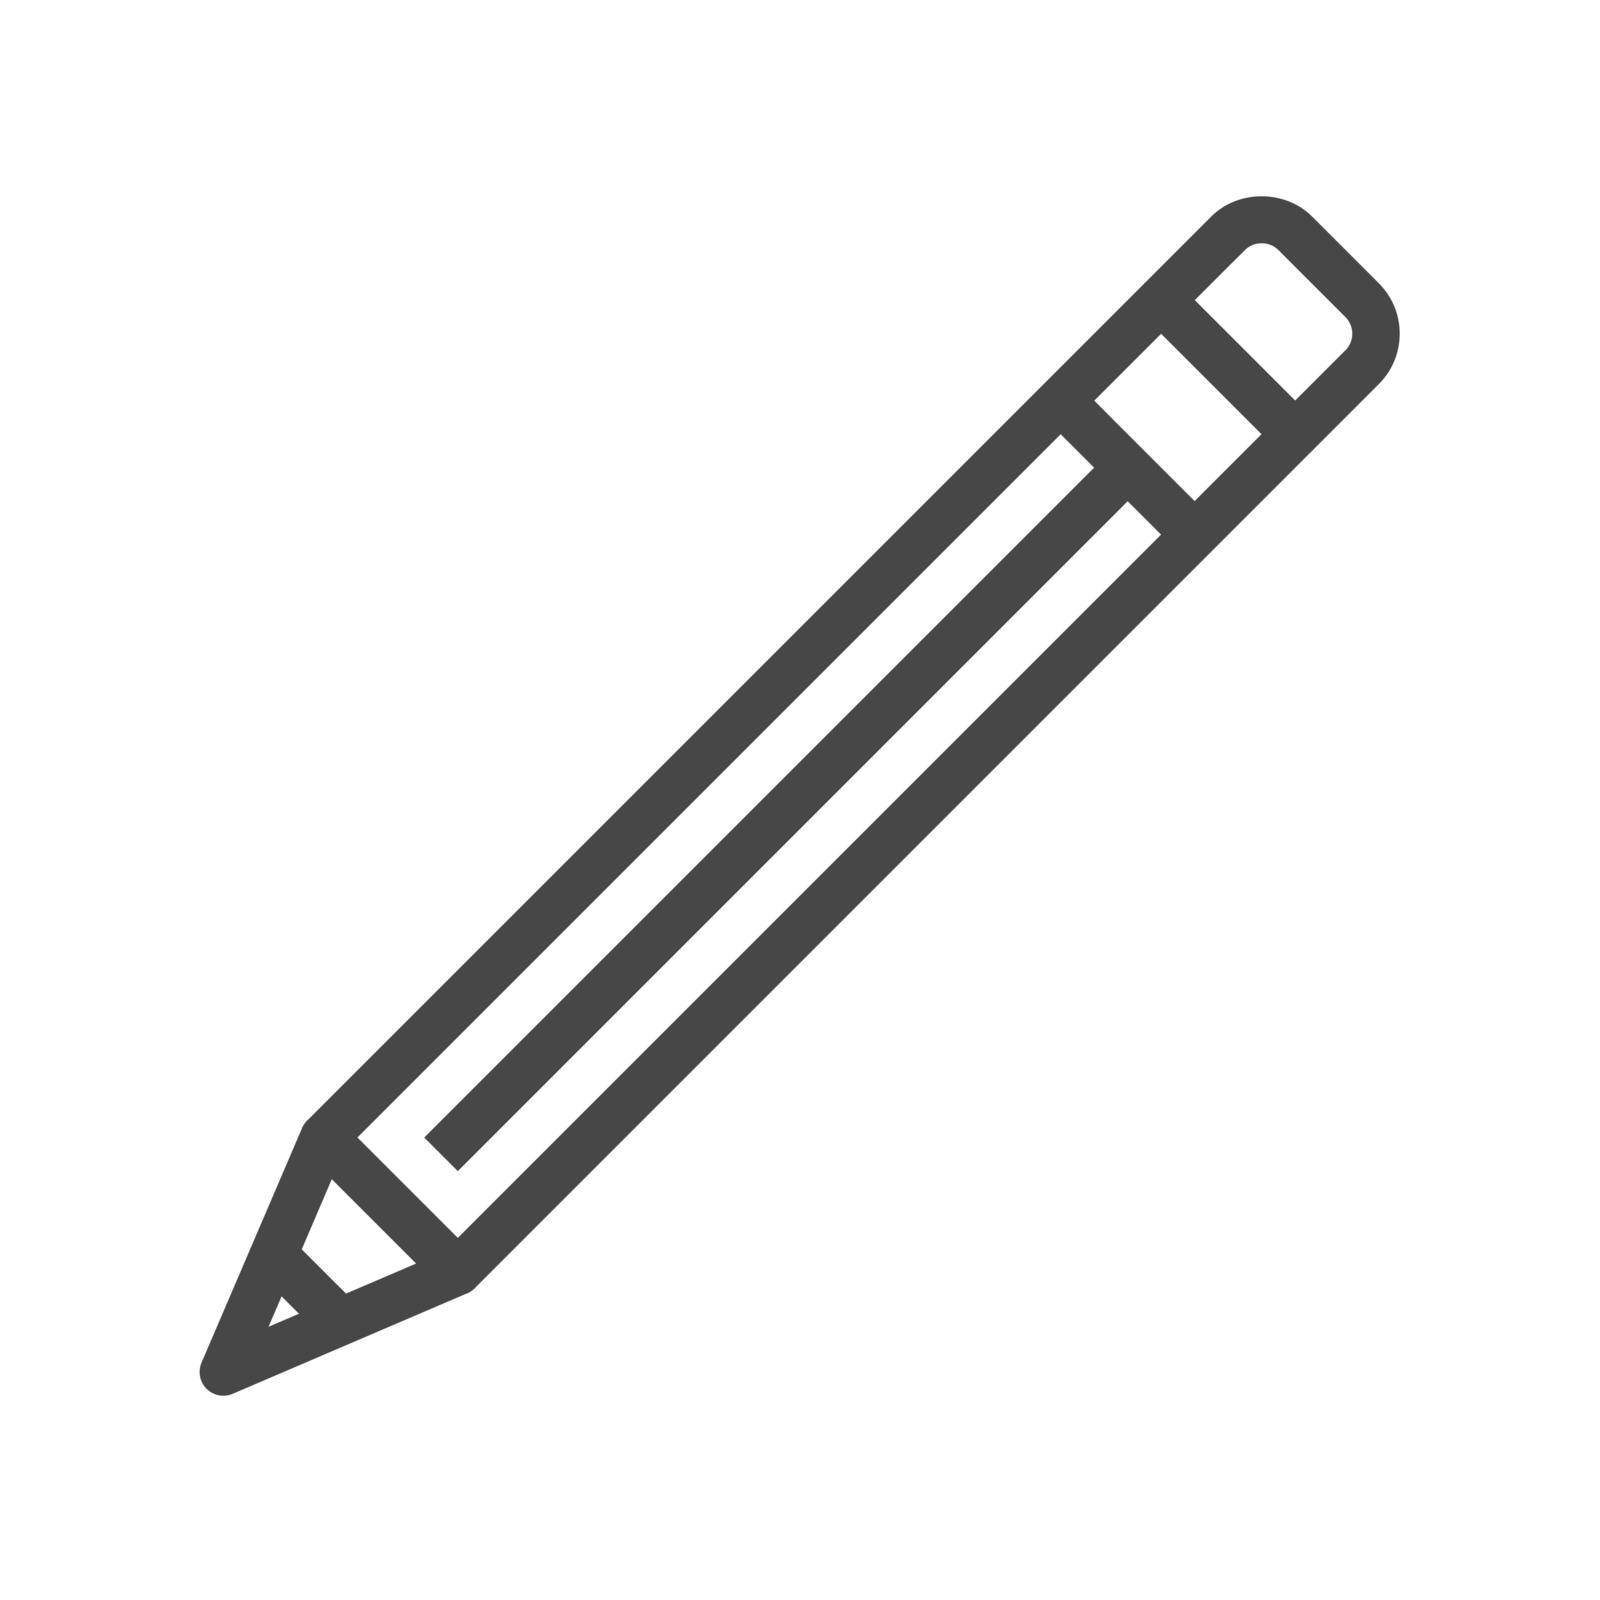 Pencil Thin Line Vector Icon by smoki